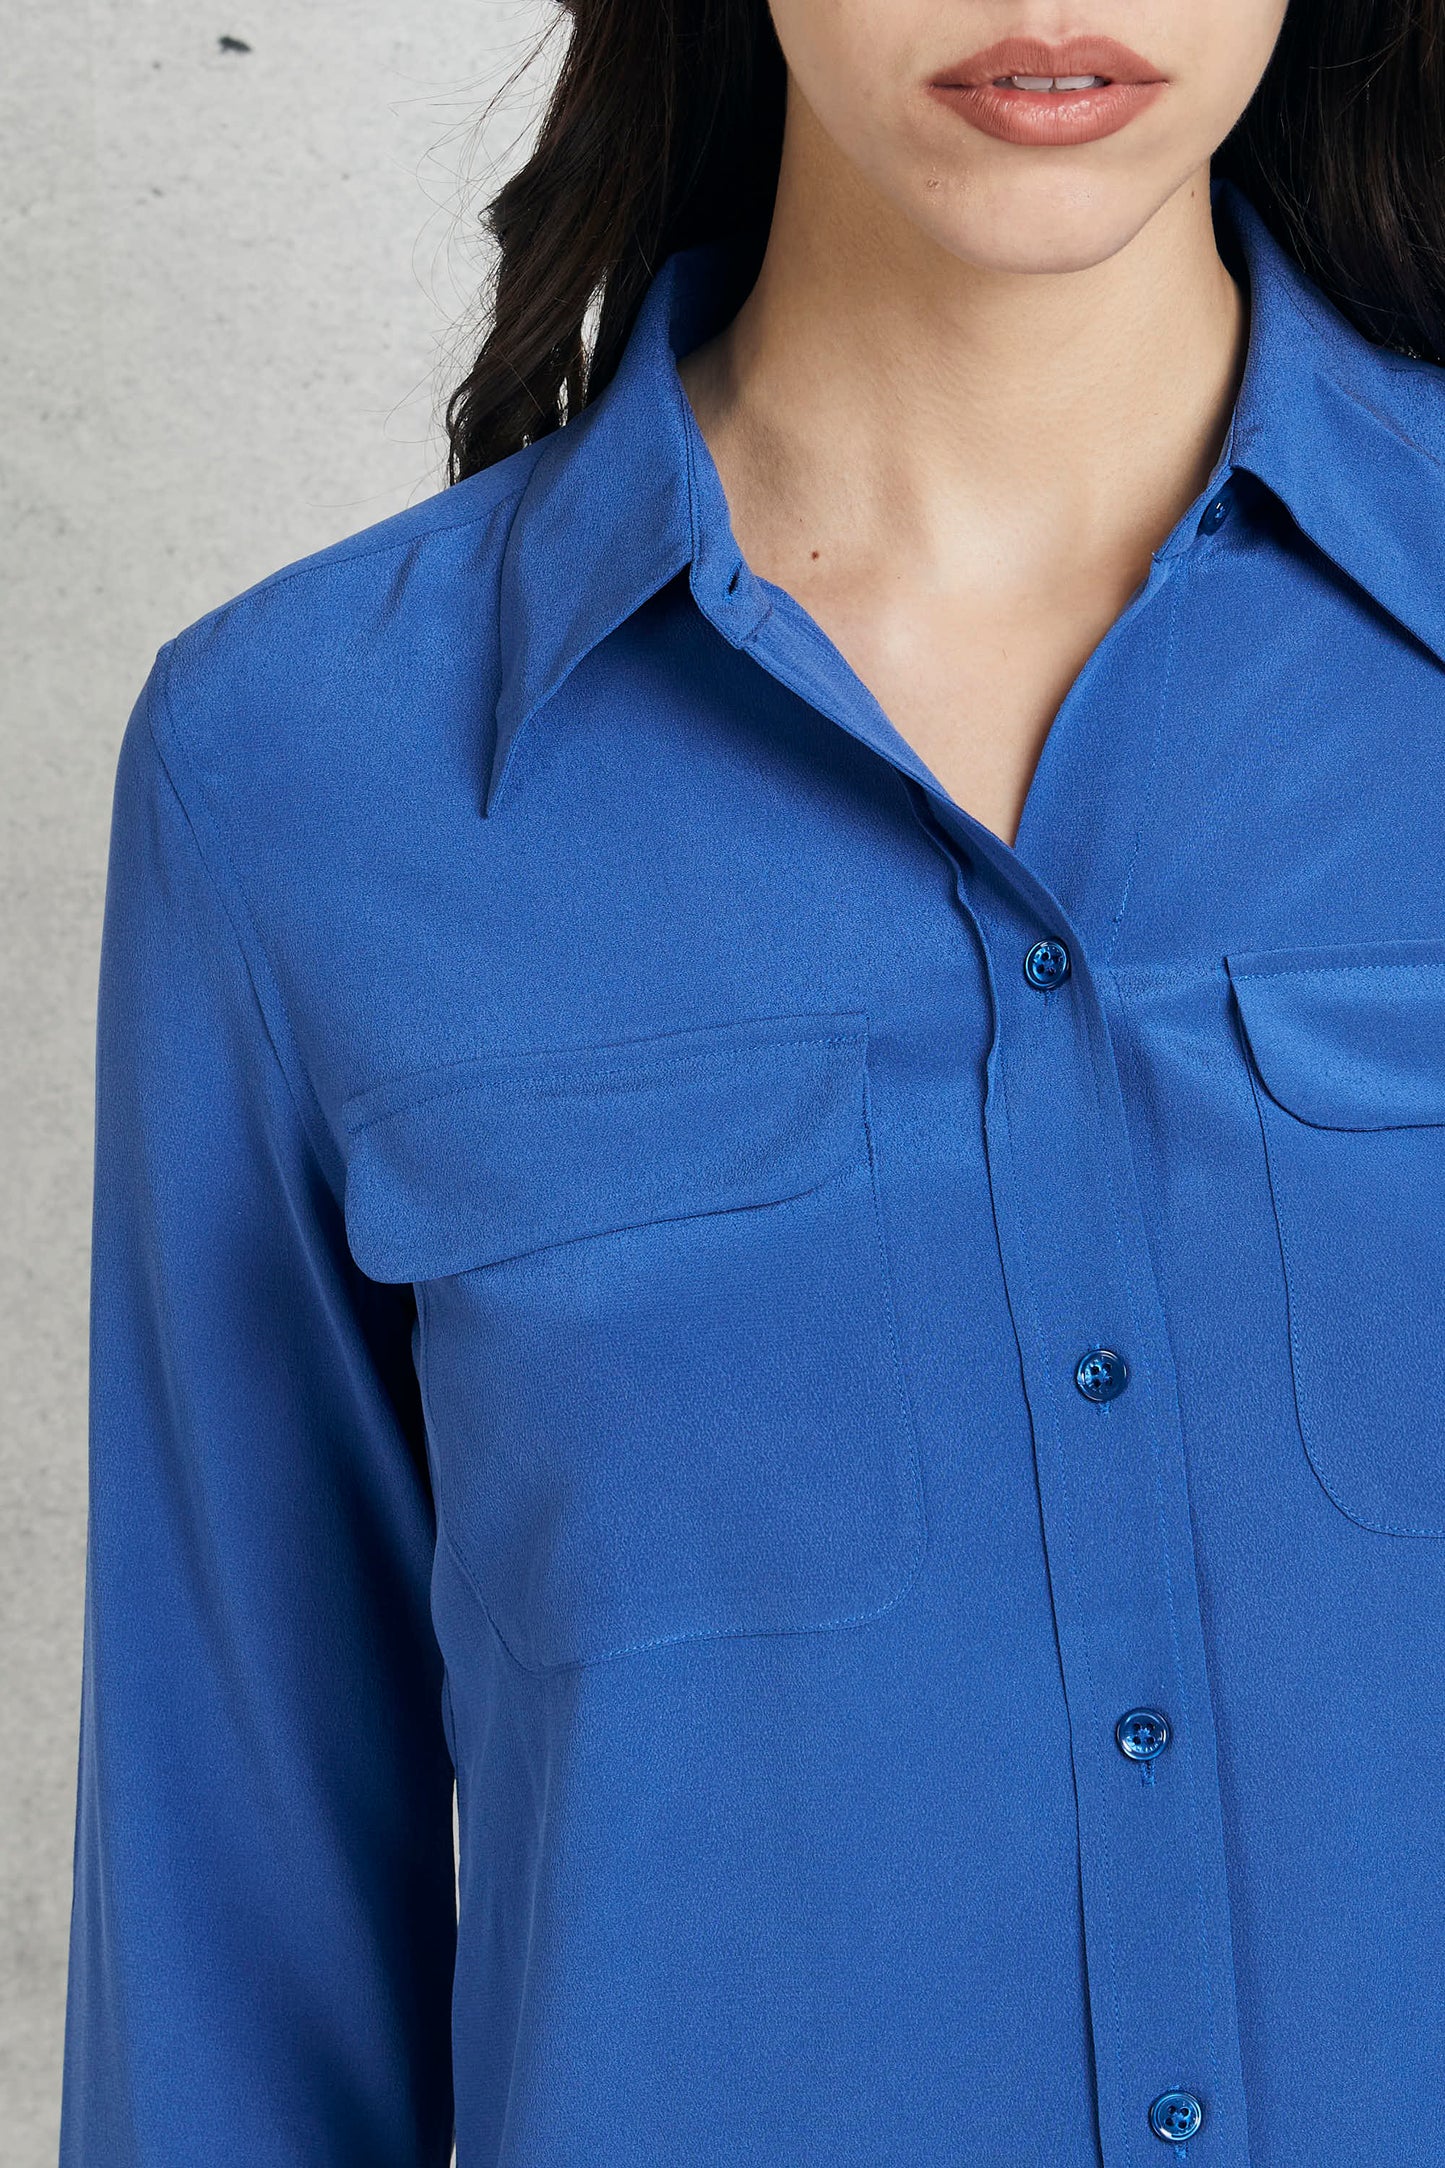  Equipment Femme Camicia In Seta Blu Blu Donna - 6